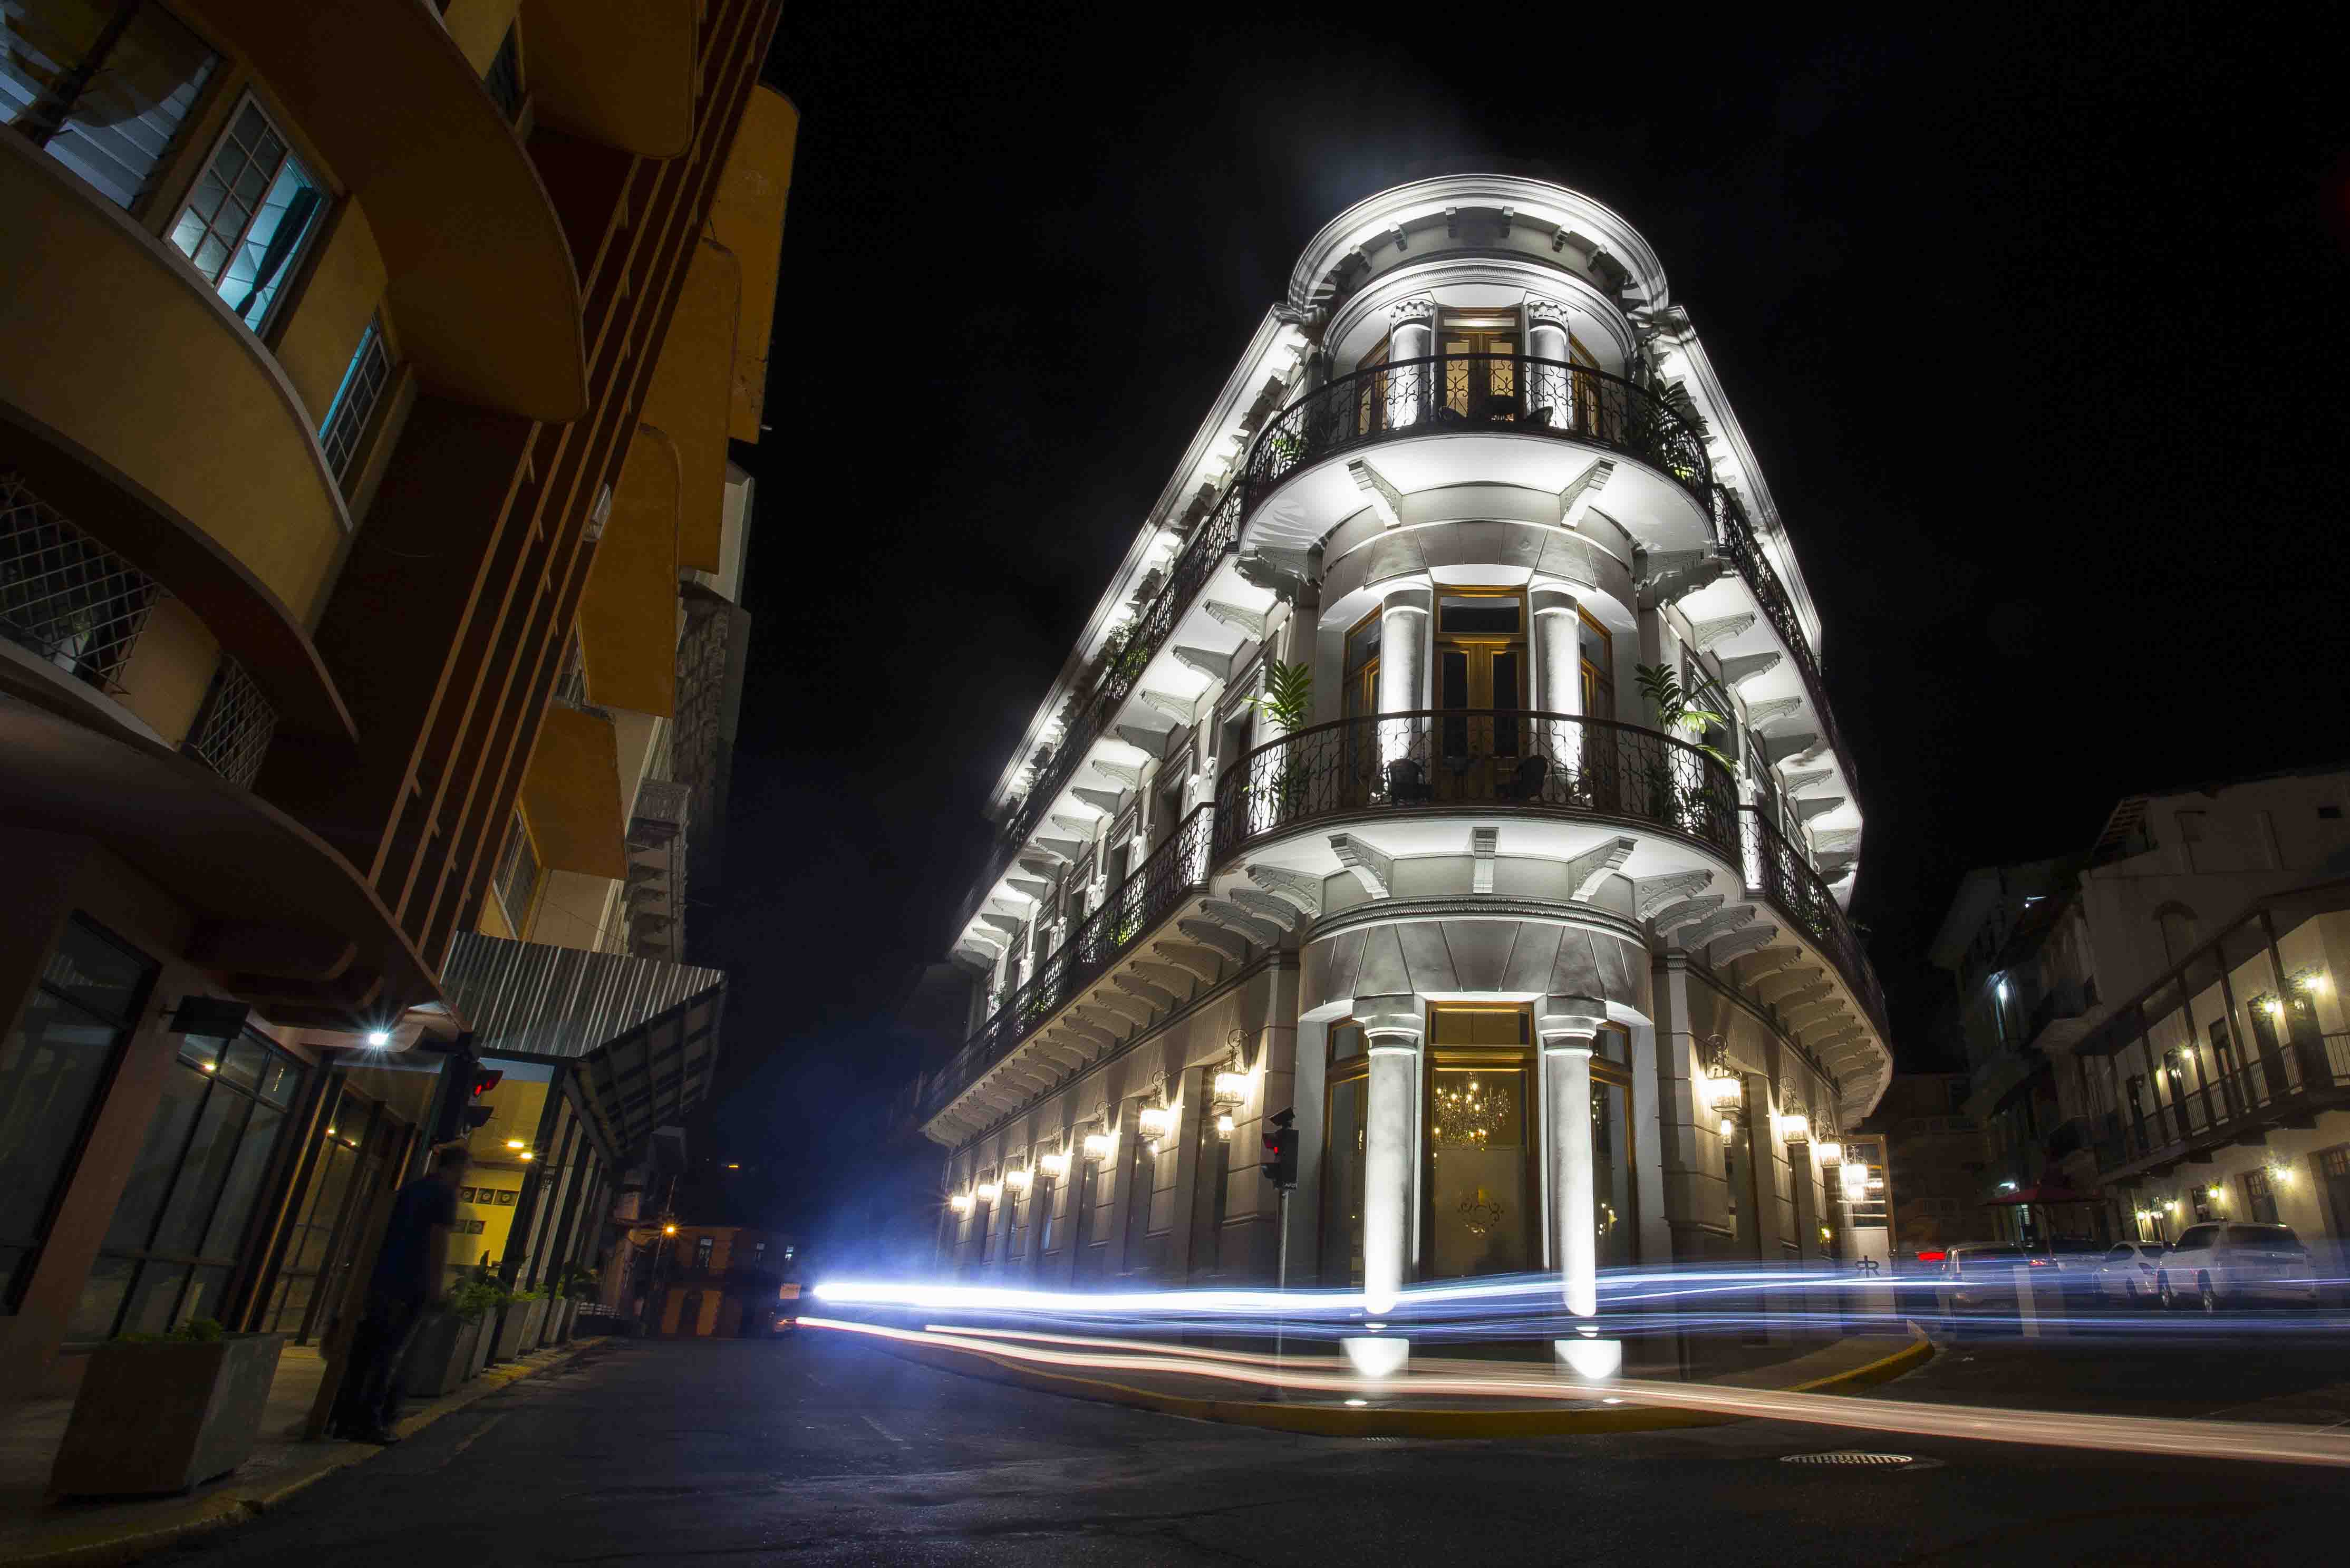  La Concordia Boutique Hotel - Casco Viejo - Panamá